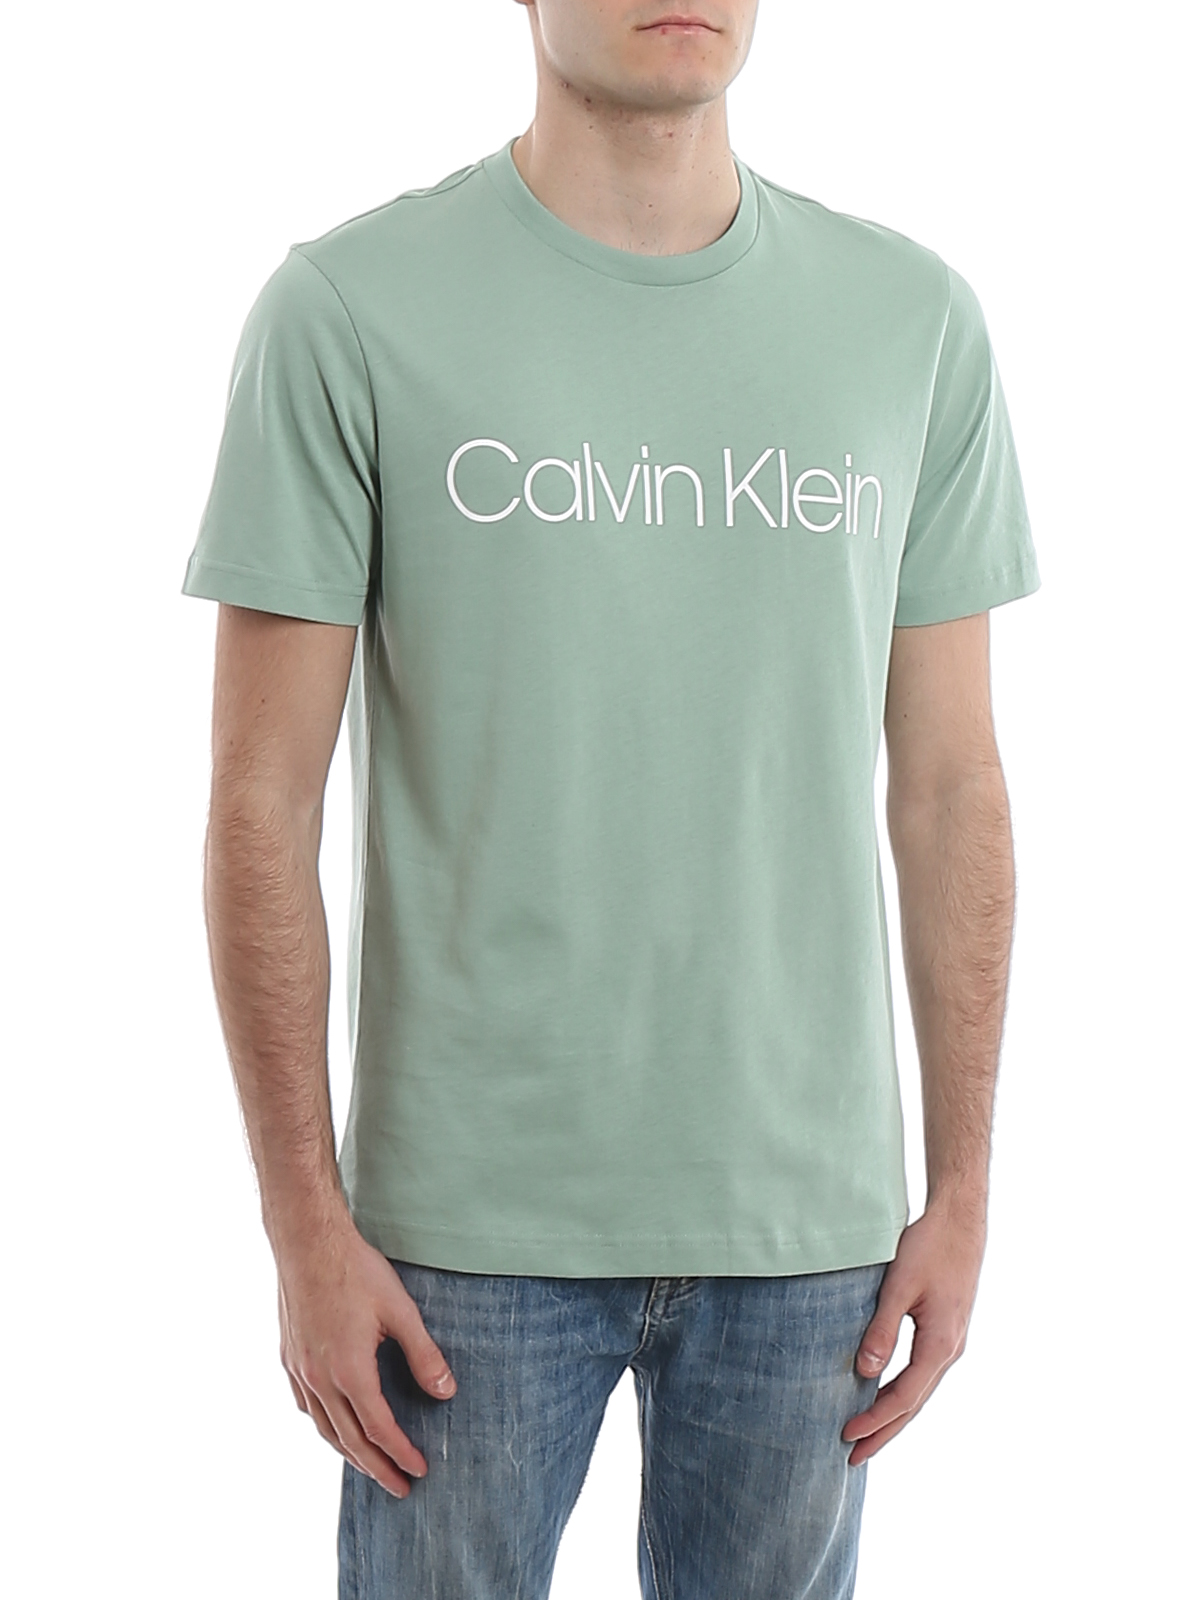 calvin klein shirt cheap